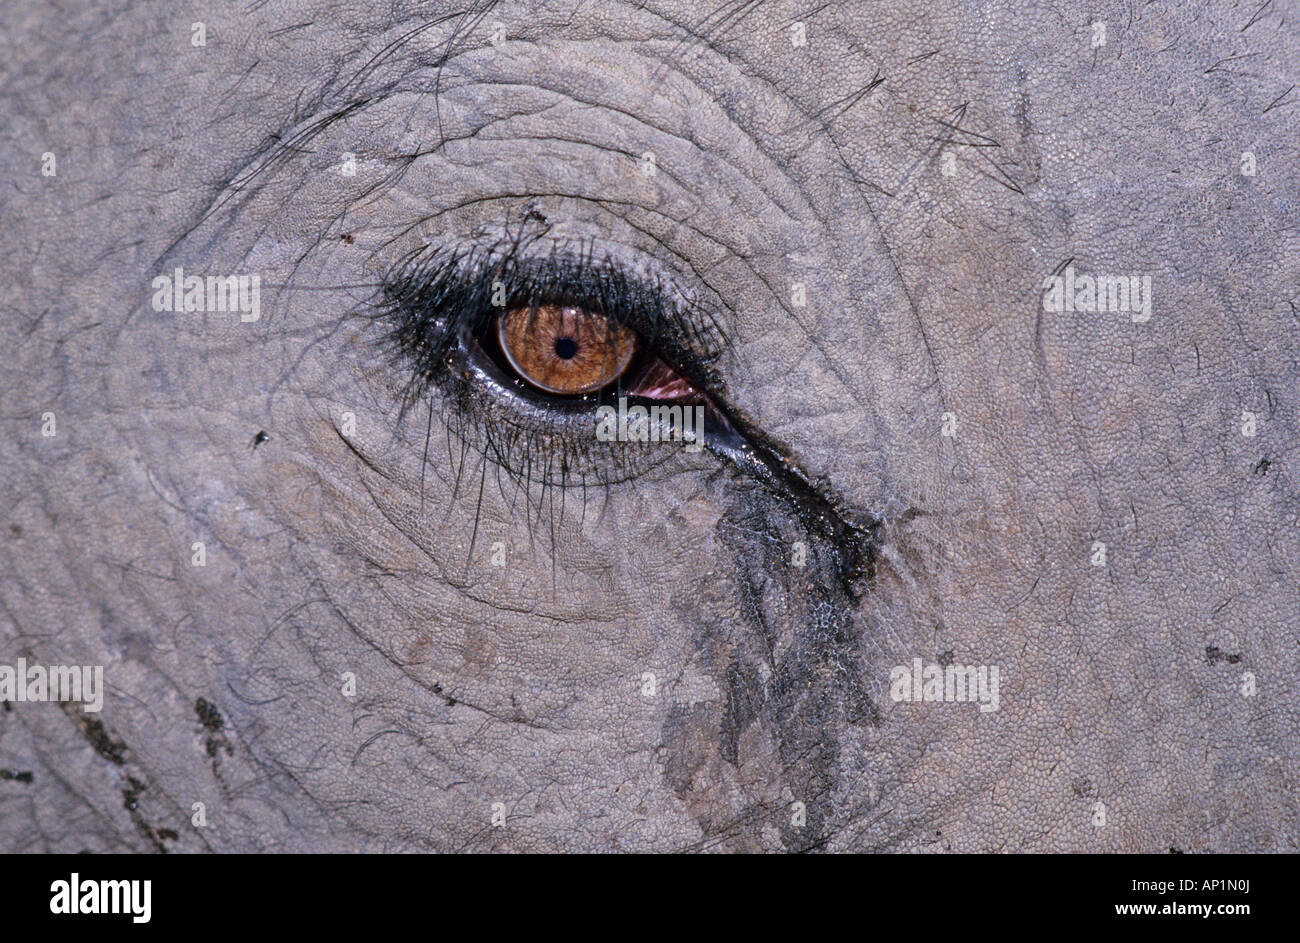 L'éléphant indien close up of eye Bandavgarh en Inde Banque D'Images